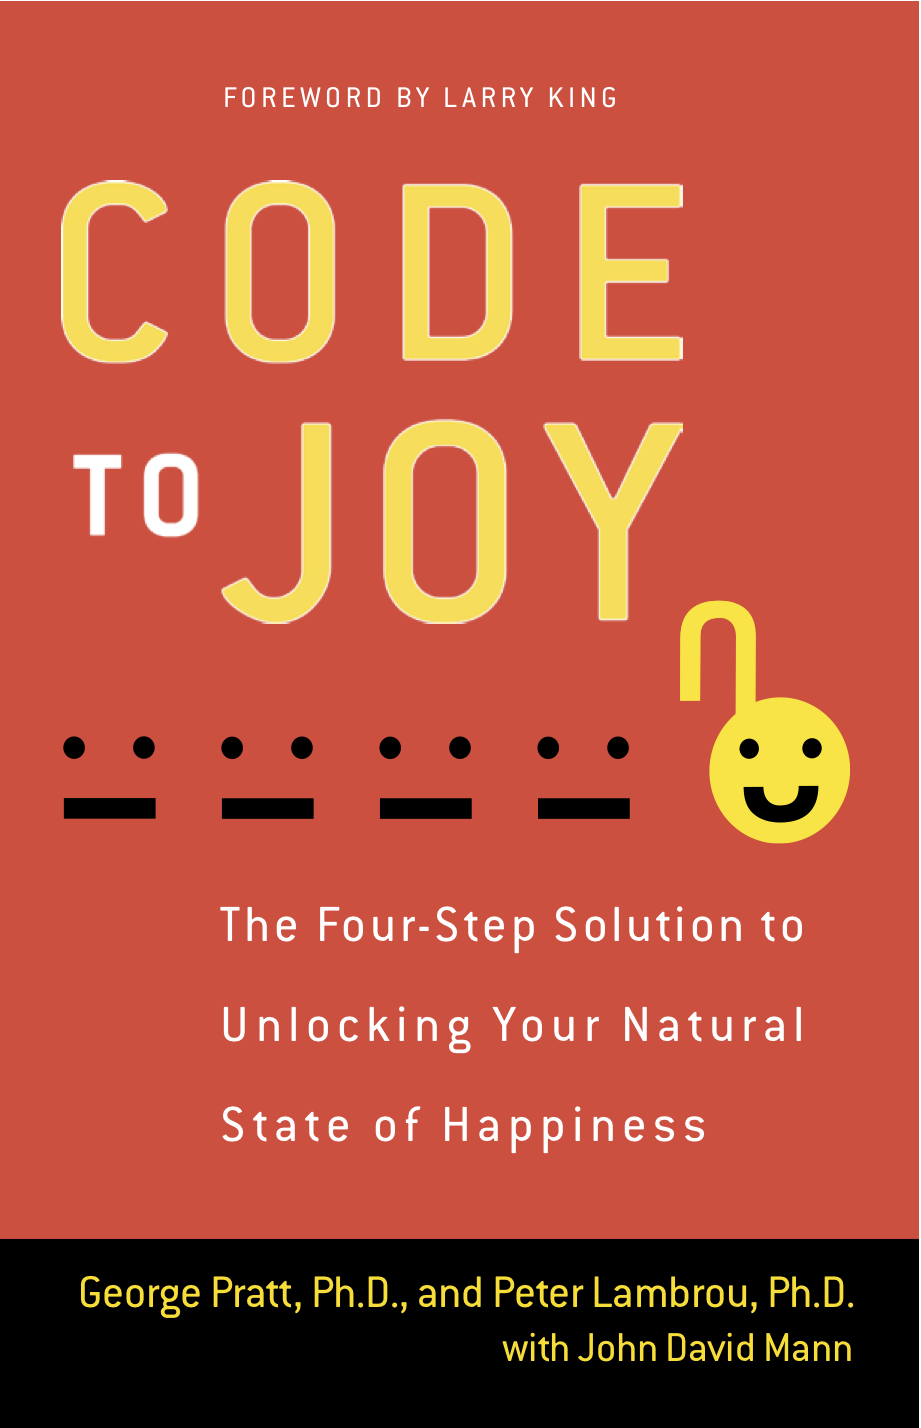 Code to Joy